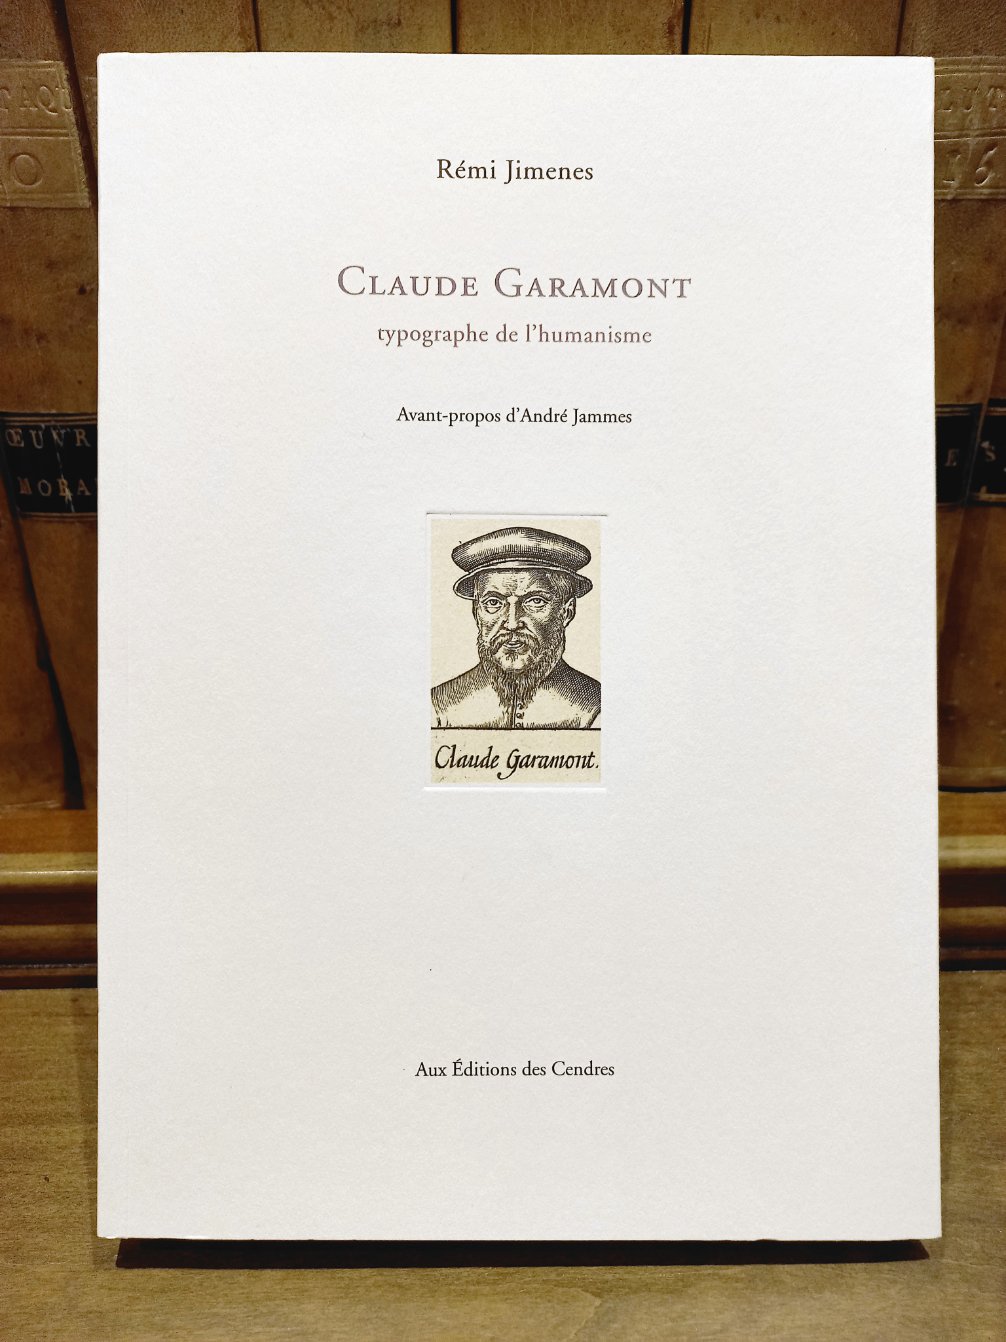 Couverture du livre Claude Garamont, typographe de l'humanisme